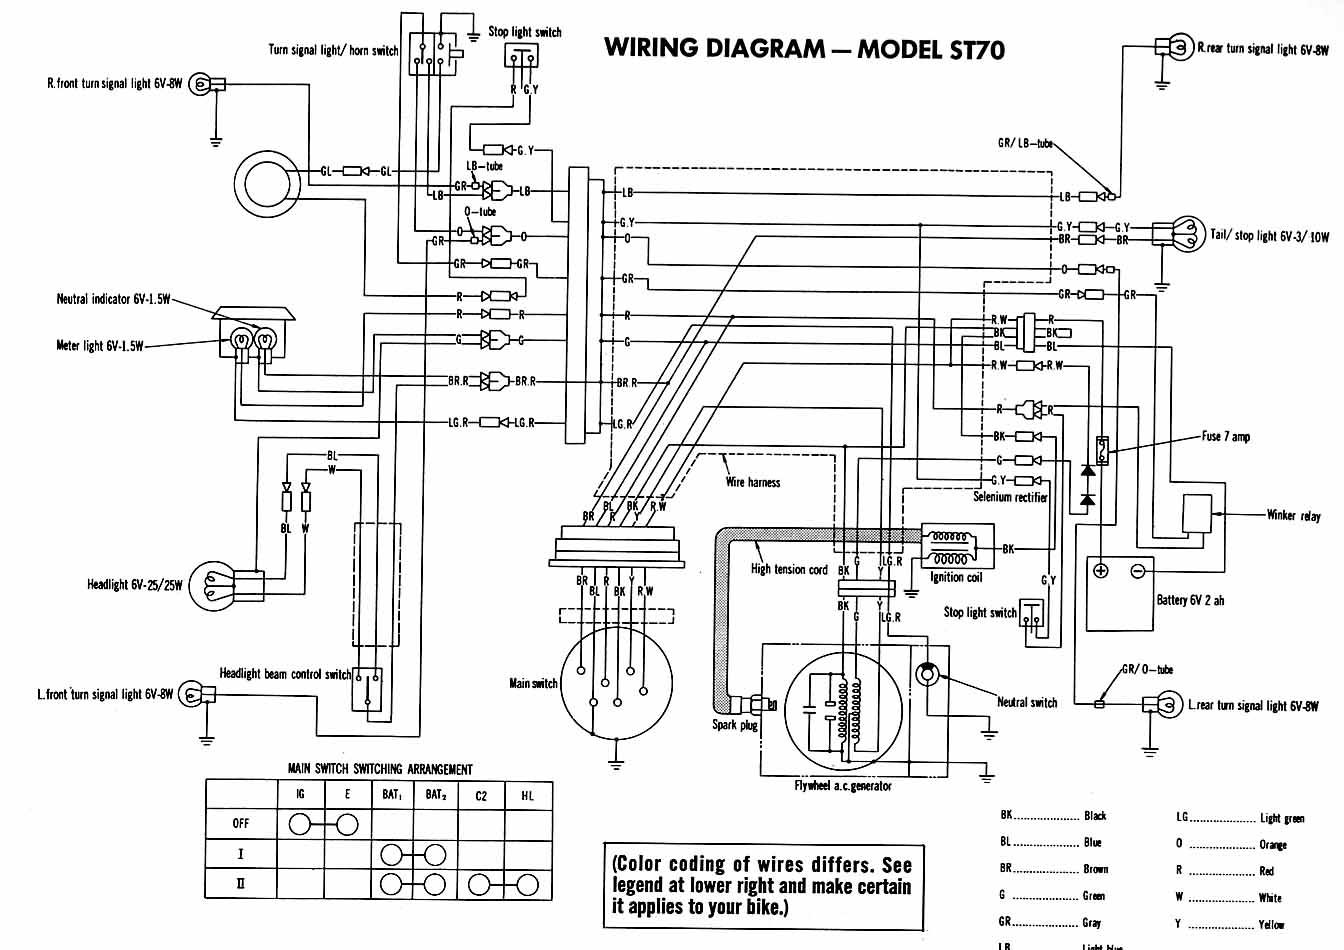 Honda 50 electrical diagram #5